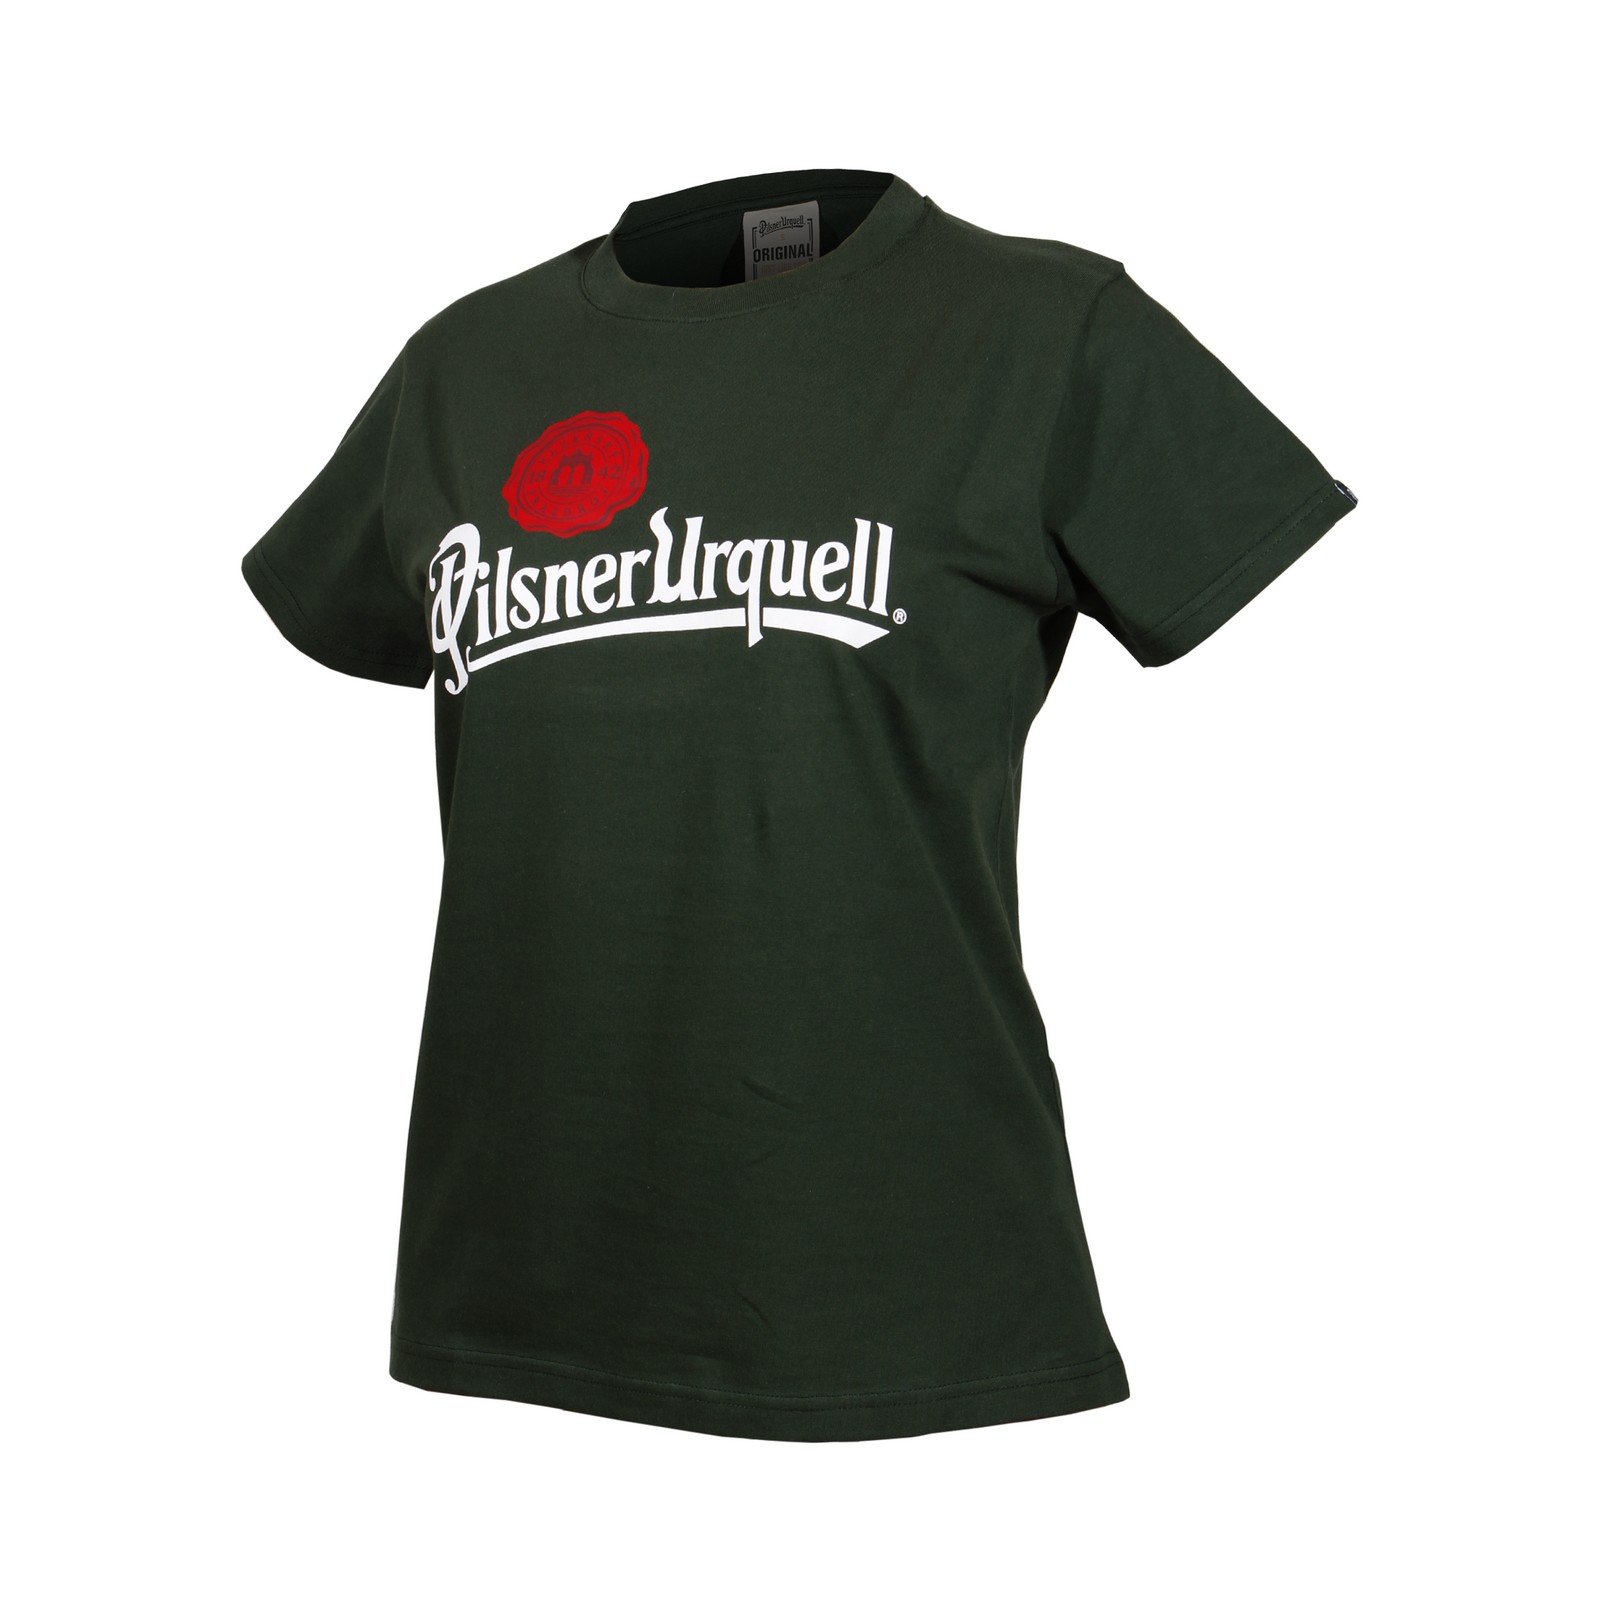 Damen T-Shirt Pilsner Urquell Logo mit Siegel grün